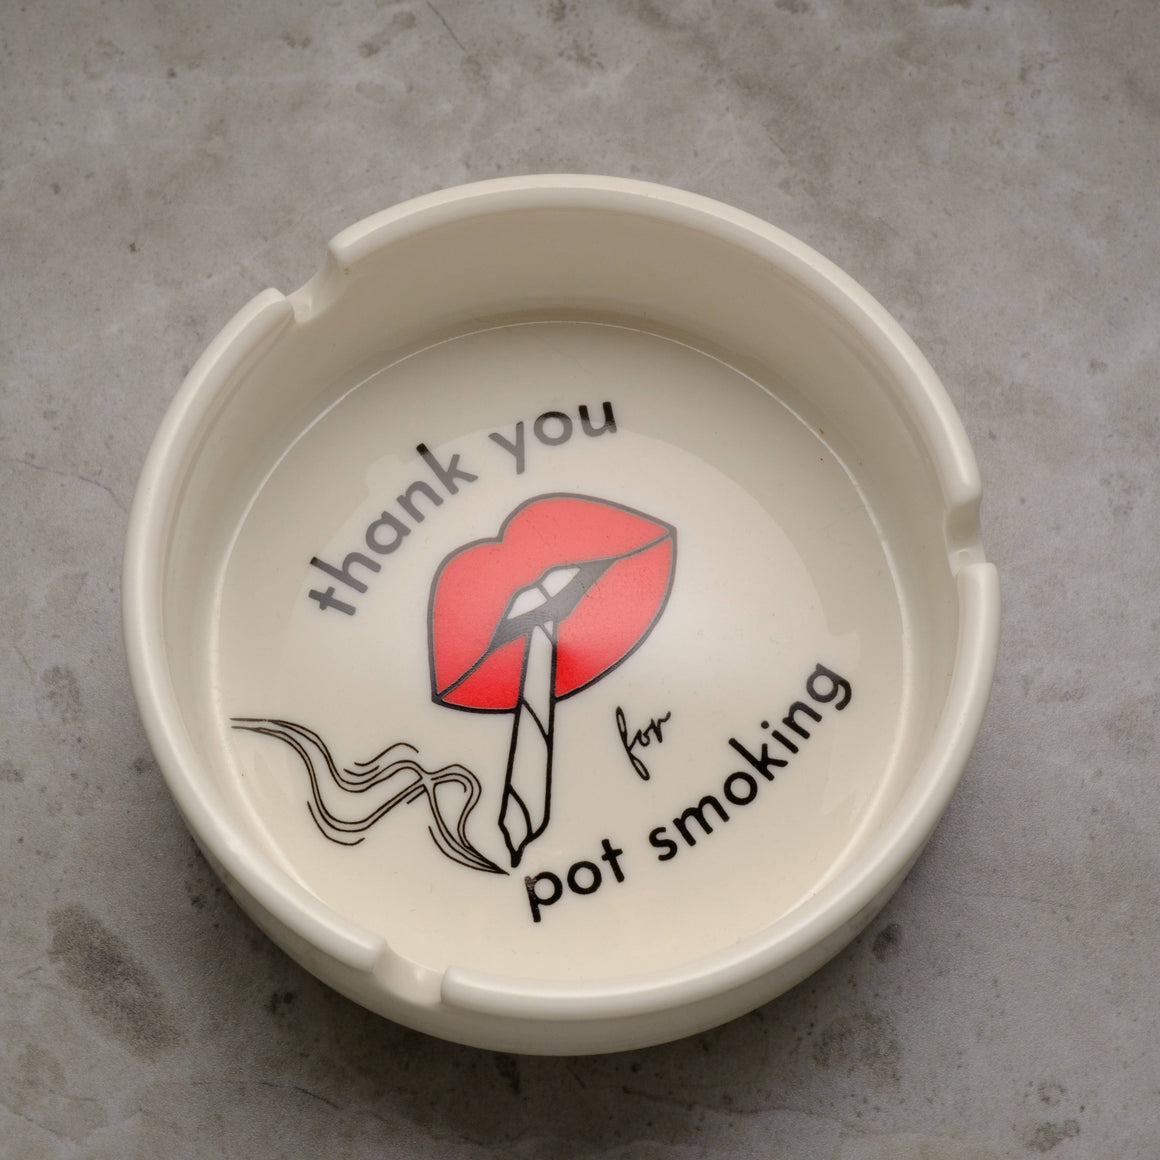 Thank You for Pot Smoking Ashtray